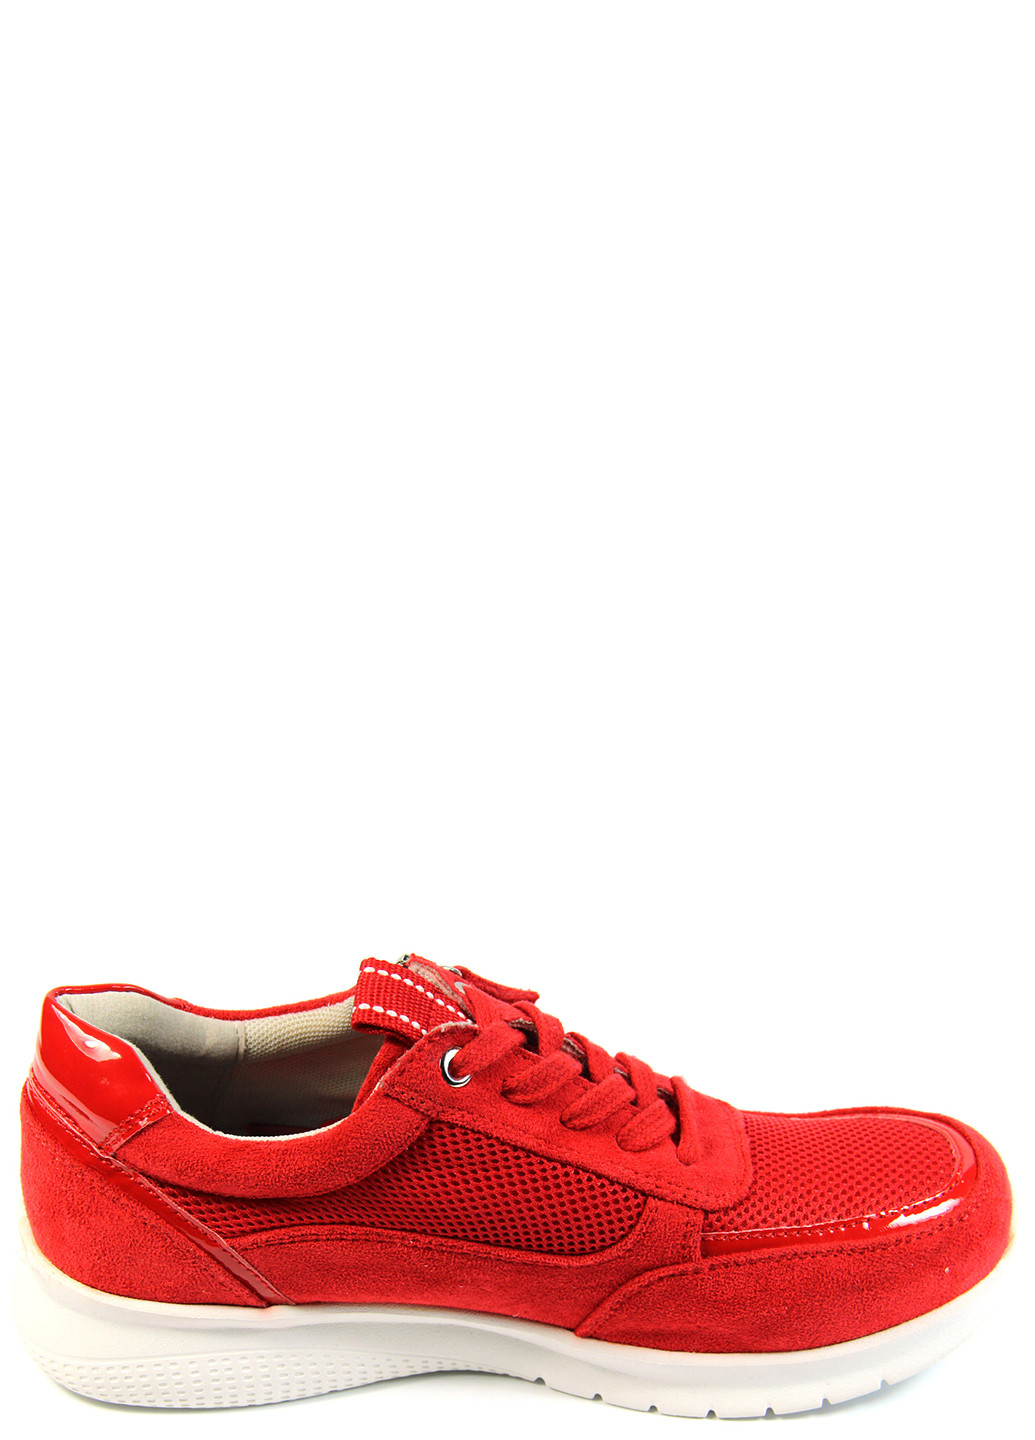 Червоні осінні жіночі кросівки Bama